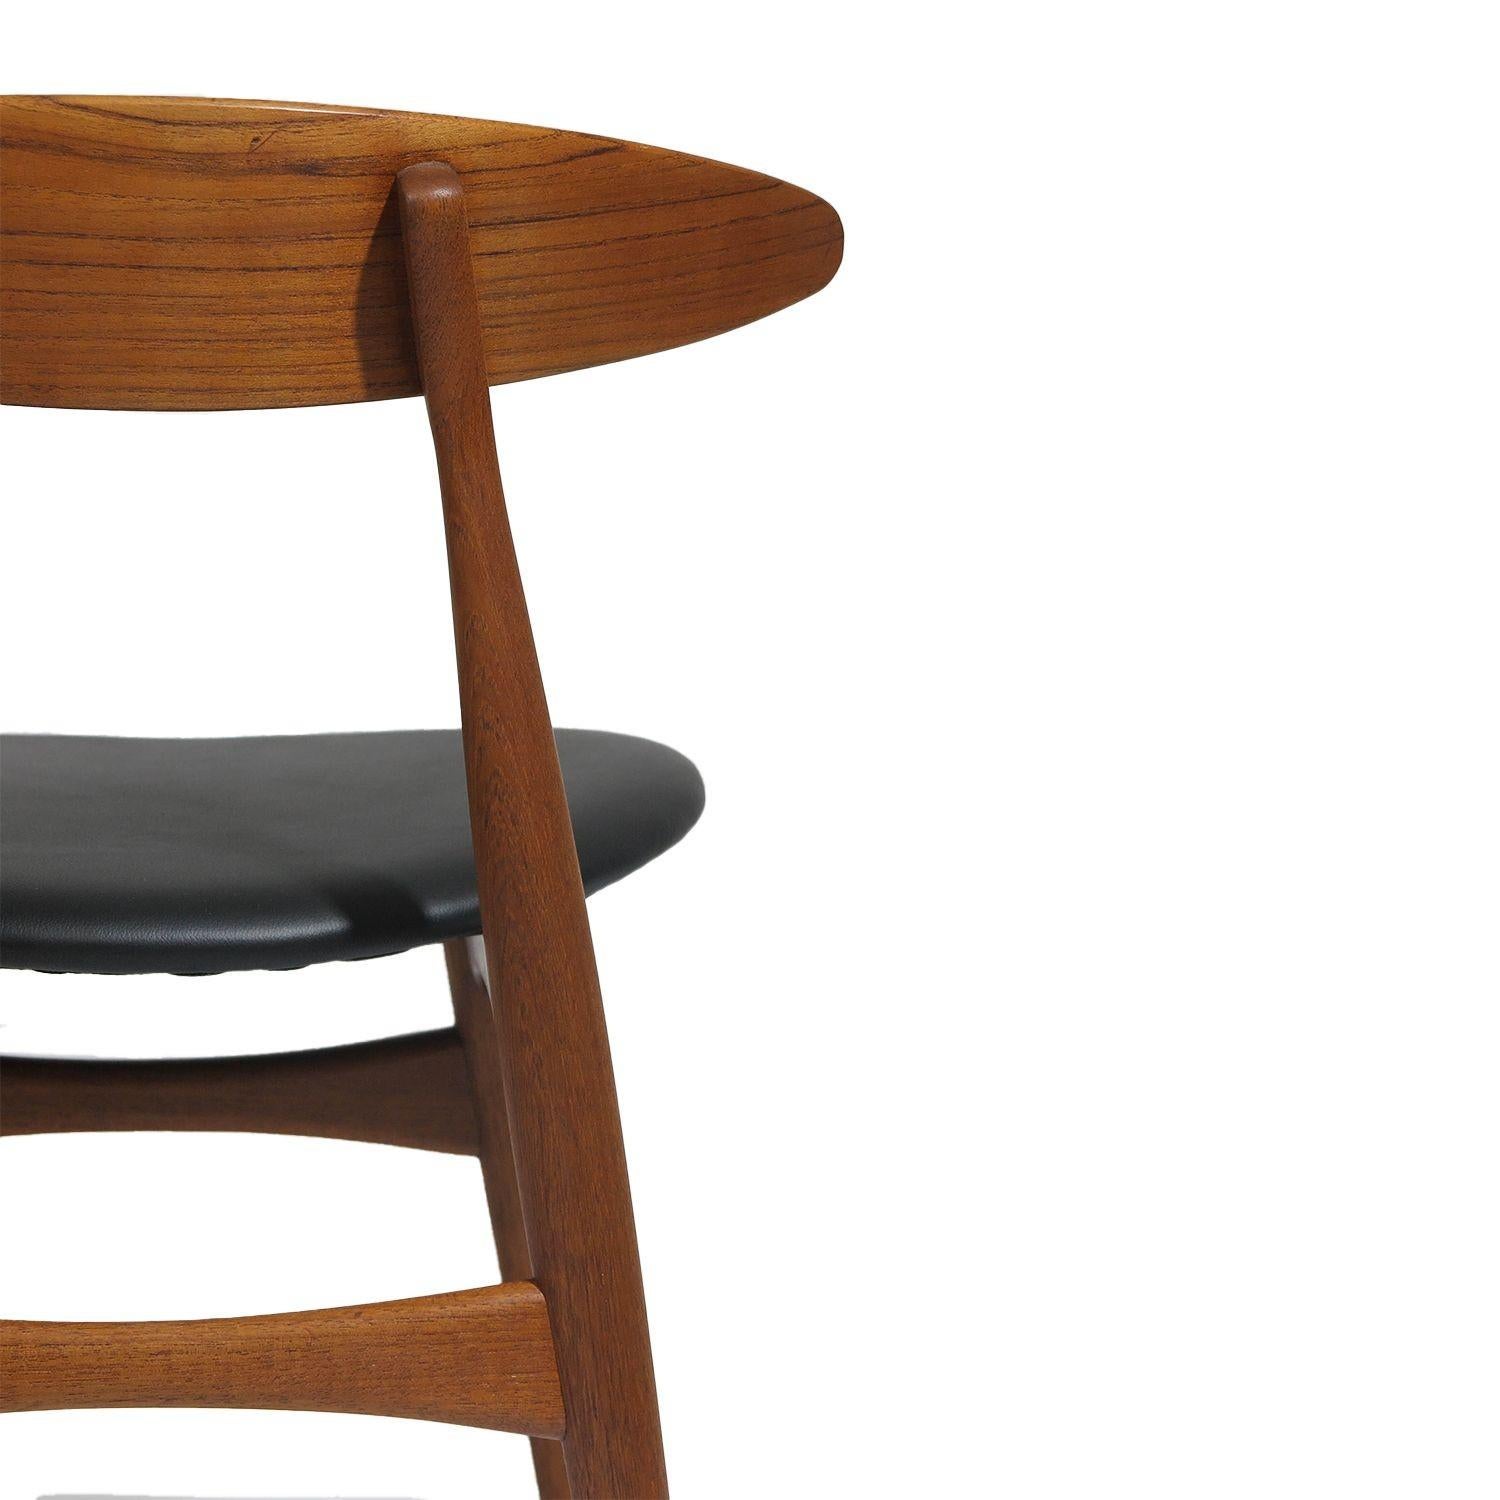 Leather Hans J. Wegner Danish Teak Dining Chairs CH 33 for Carl Hansen For Sale